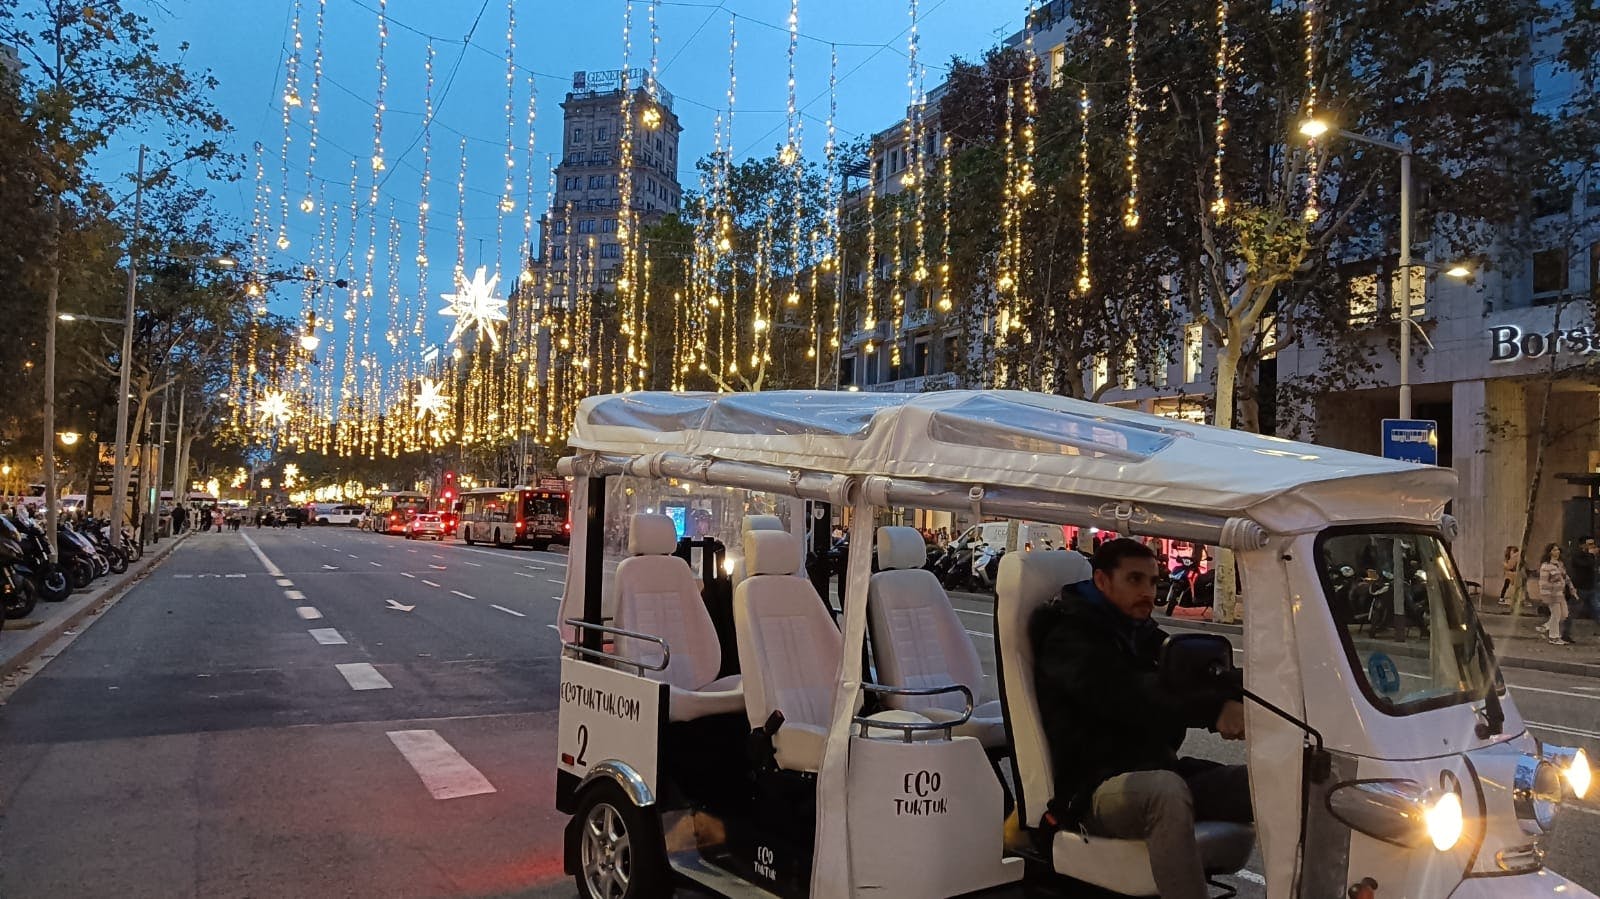 Excursão às luzes de Natal de Barcelona em um Eco Tuk Tuk particular